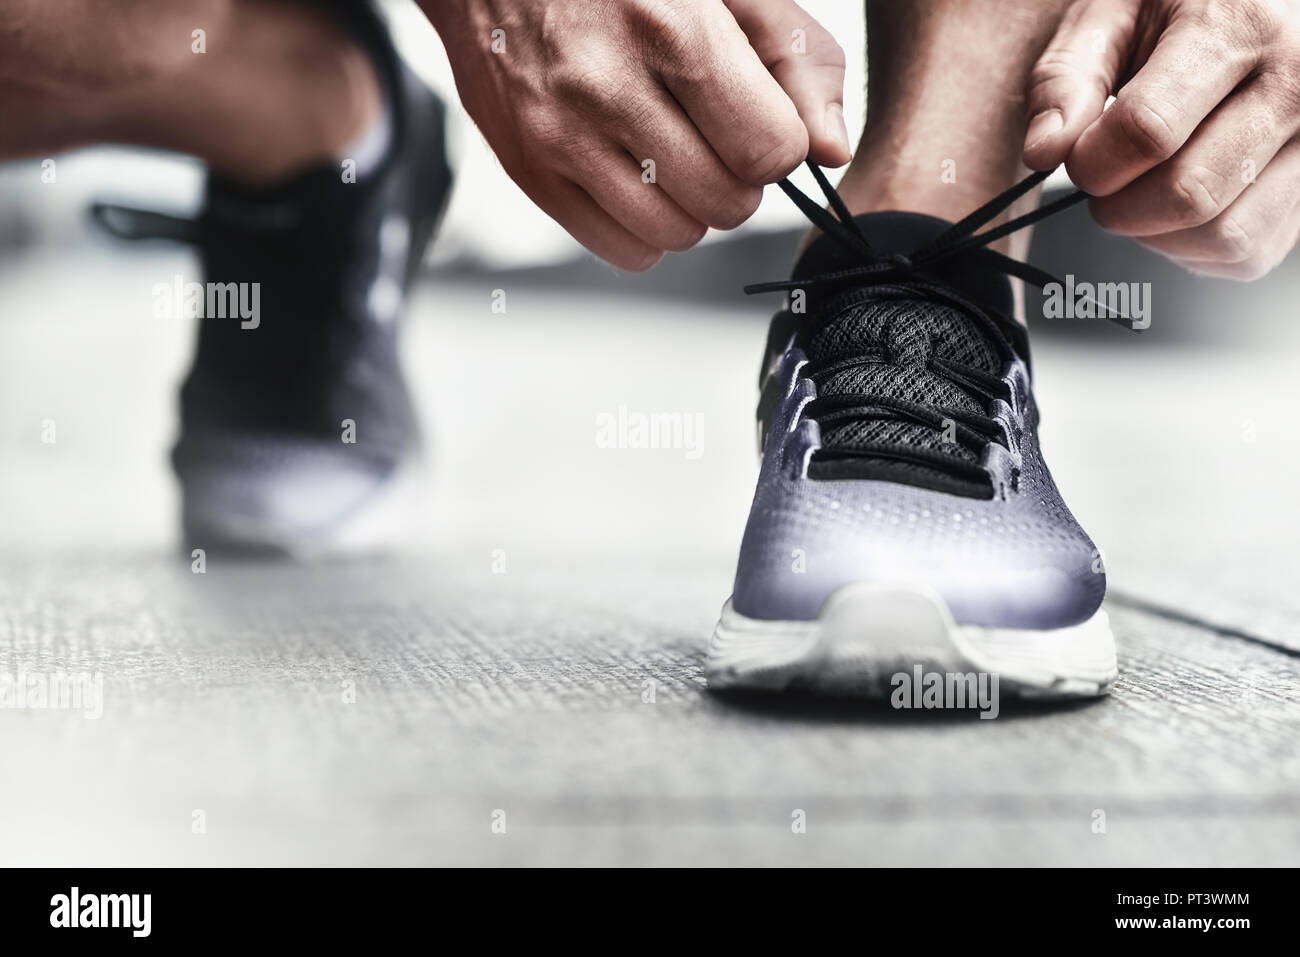 Zugeschnittenes Bild der Hände binden Schnürsenkel auf Sneaker, Lauffläche  Hintergrund. Hände von Sportler mit schrittzähler Schnürsenkel binden auf  sportliche Sneaker. Ru Stockfotografie - Alamy